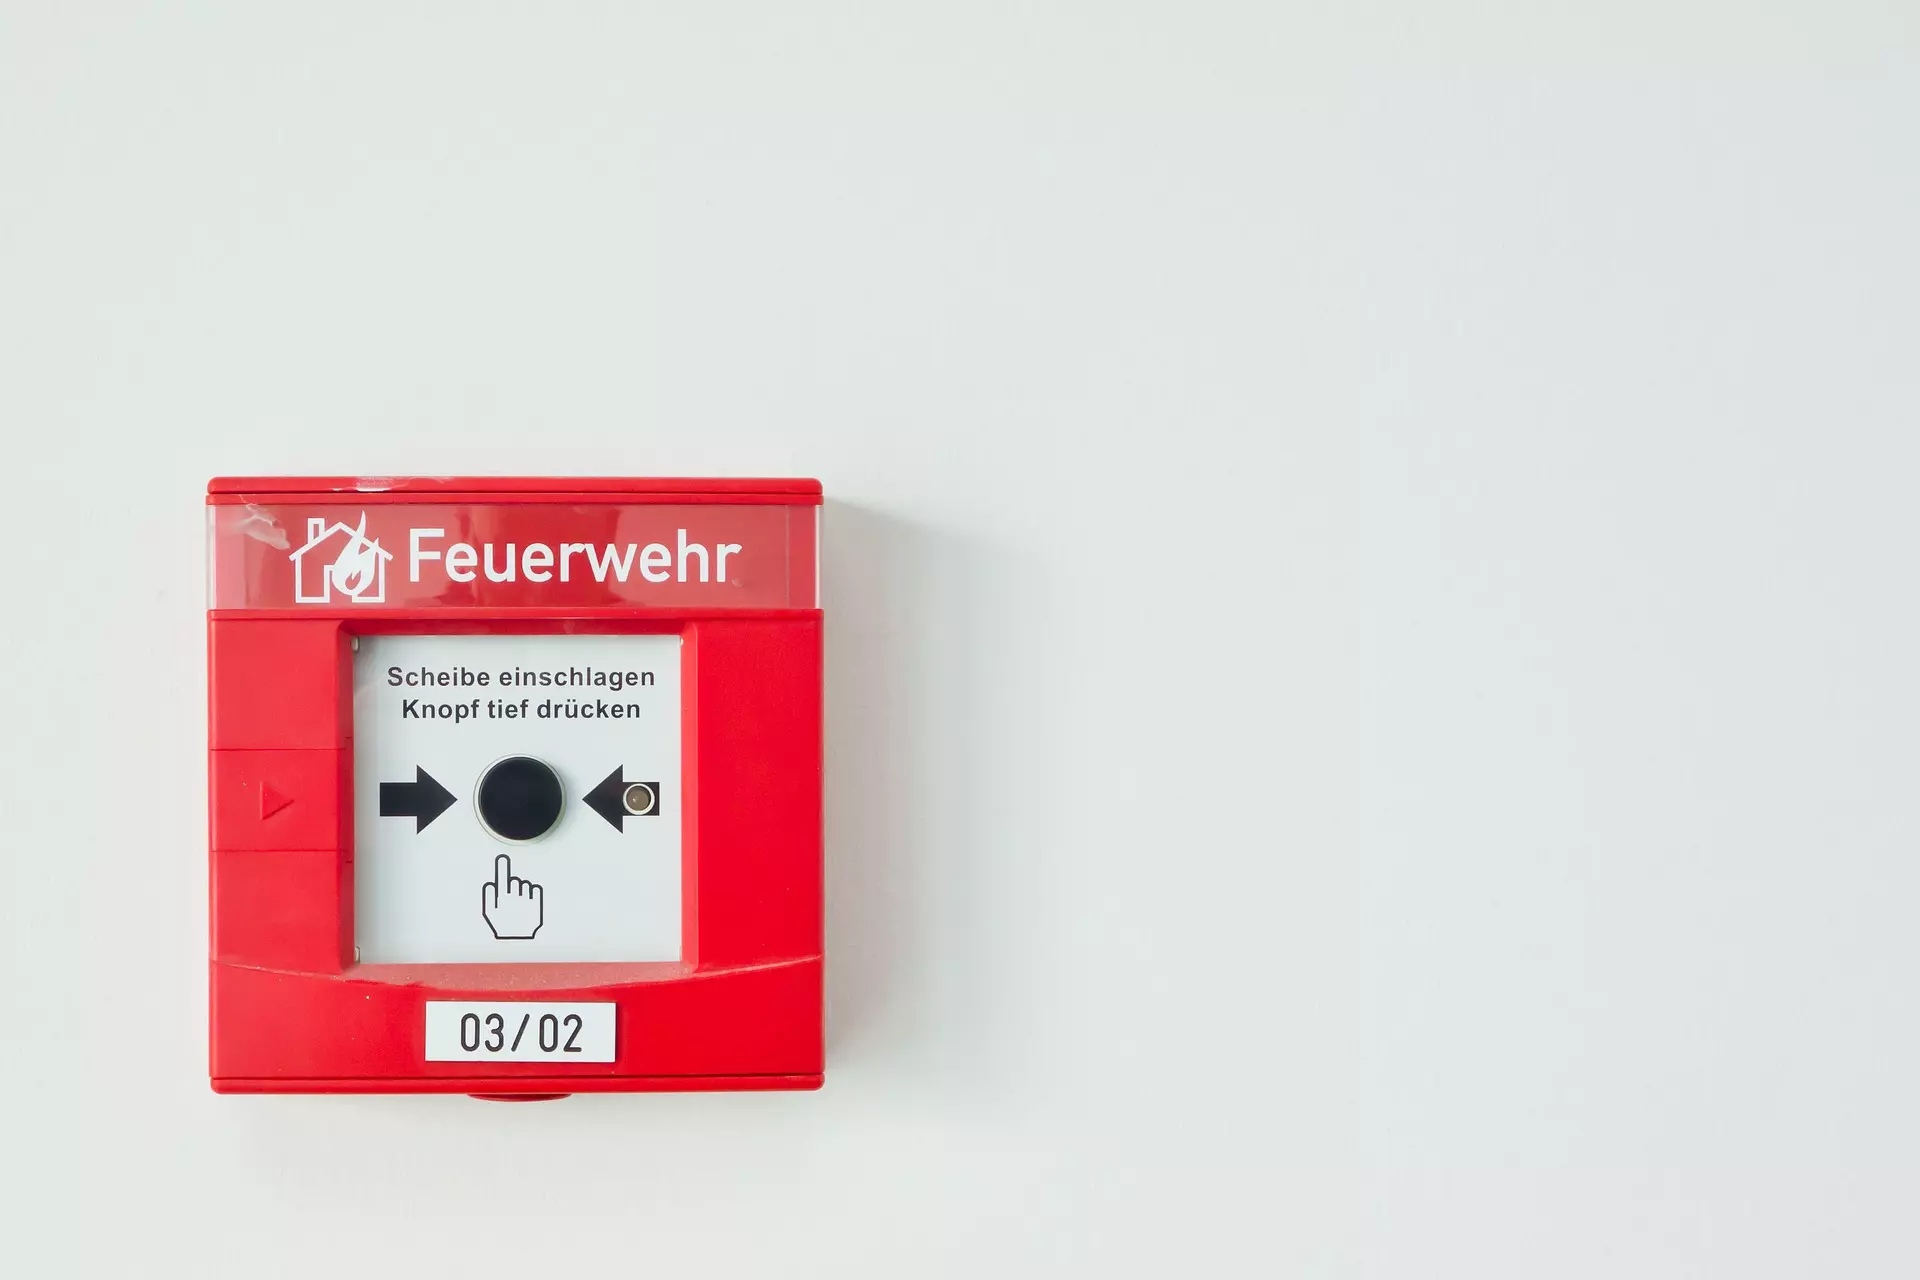 Bild zeigt einen roten Druckknopfmelder mit der Aufschrift "Feuerwehr"